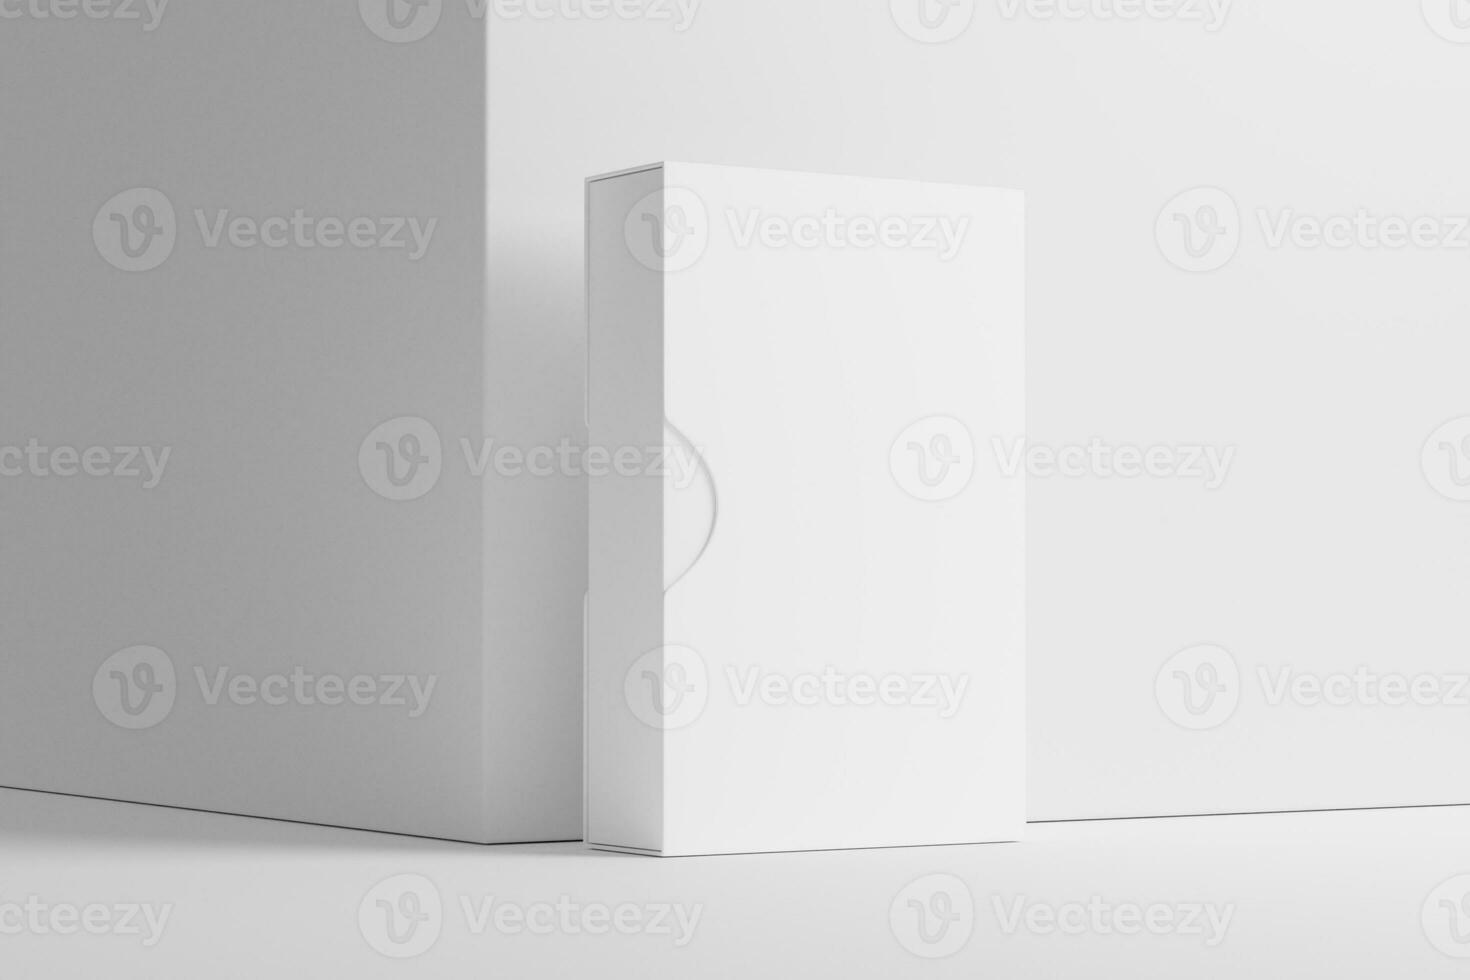 Software scatola wth scivolare Astuccio bianca vuoto 3d interpretazione modello foto